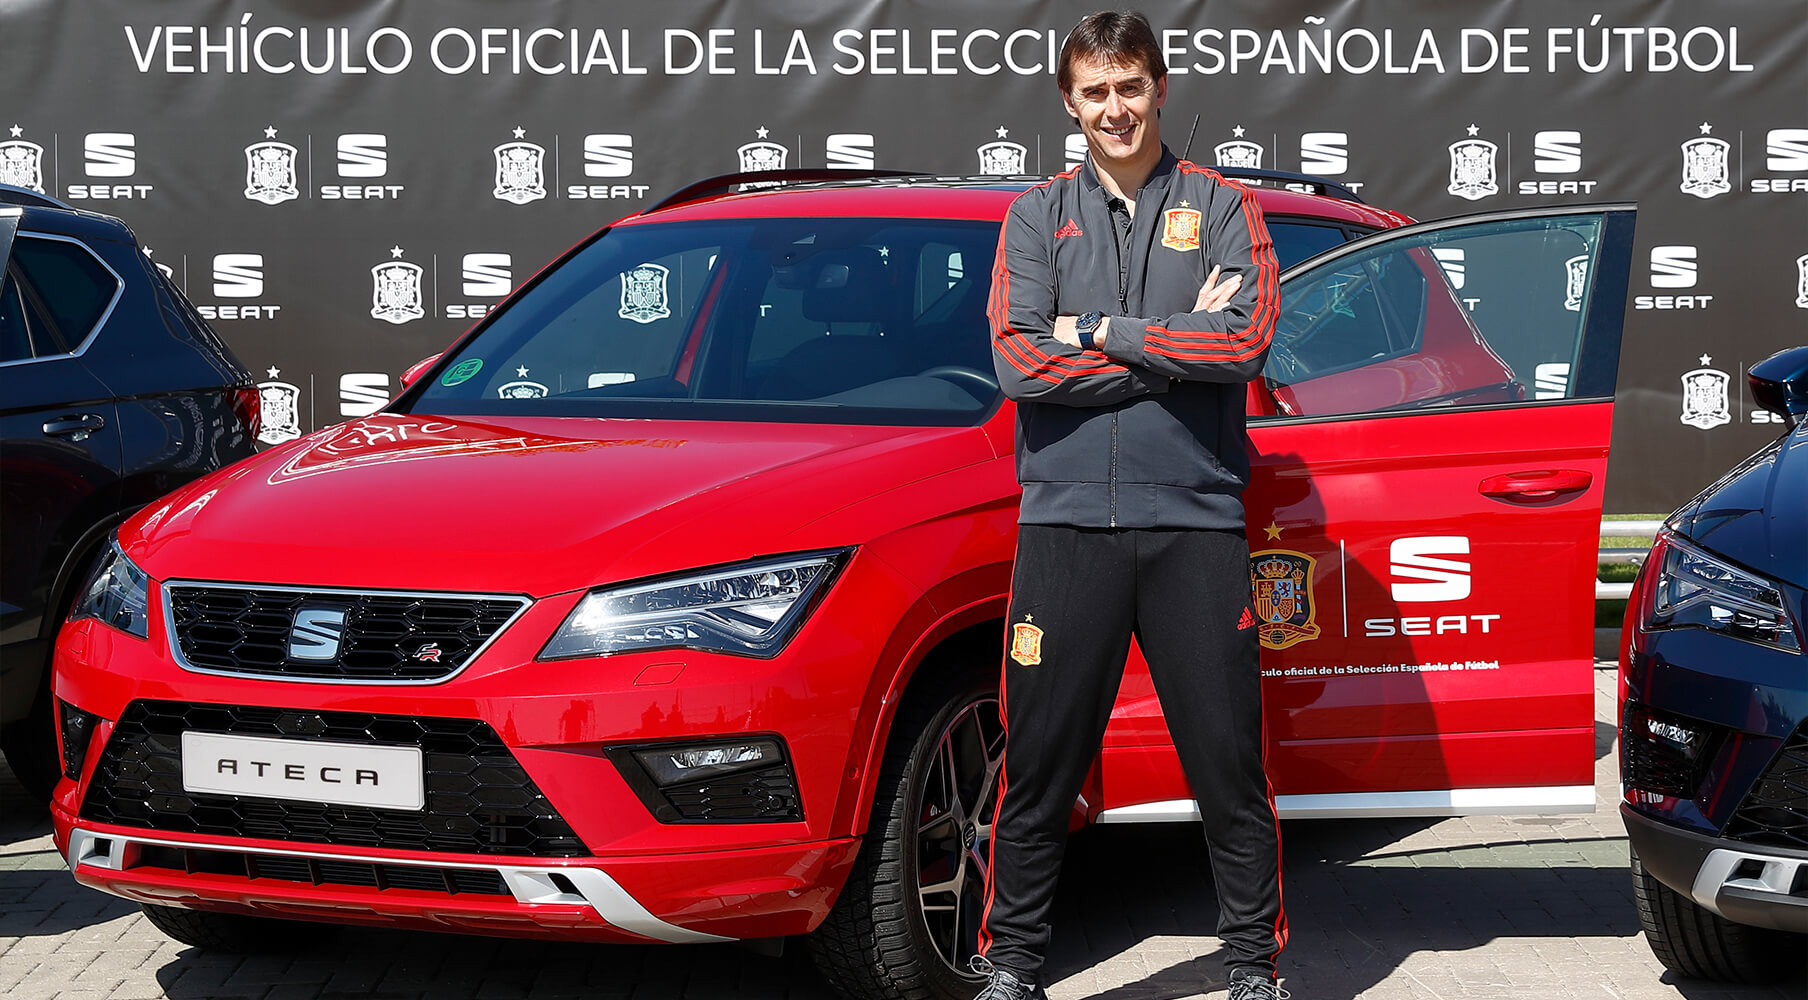 Zdjęcie trenera hiszpańskiej drużyny narodowej Lopetegui z SEAT-em Ateca – SEAT sponsorem piłkarskiej reprezentacji Hiszpanii